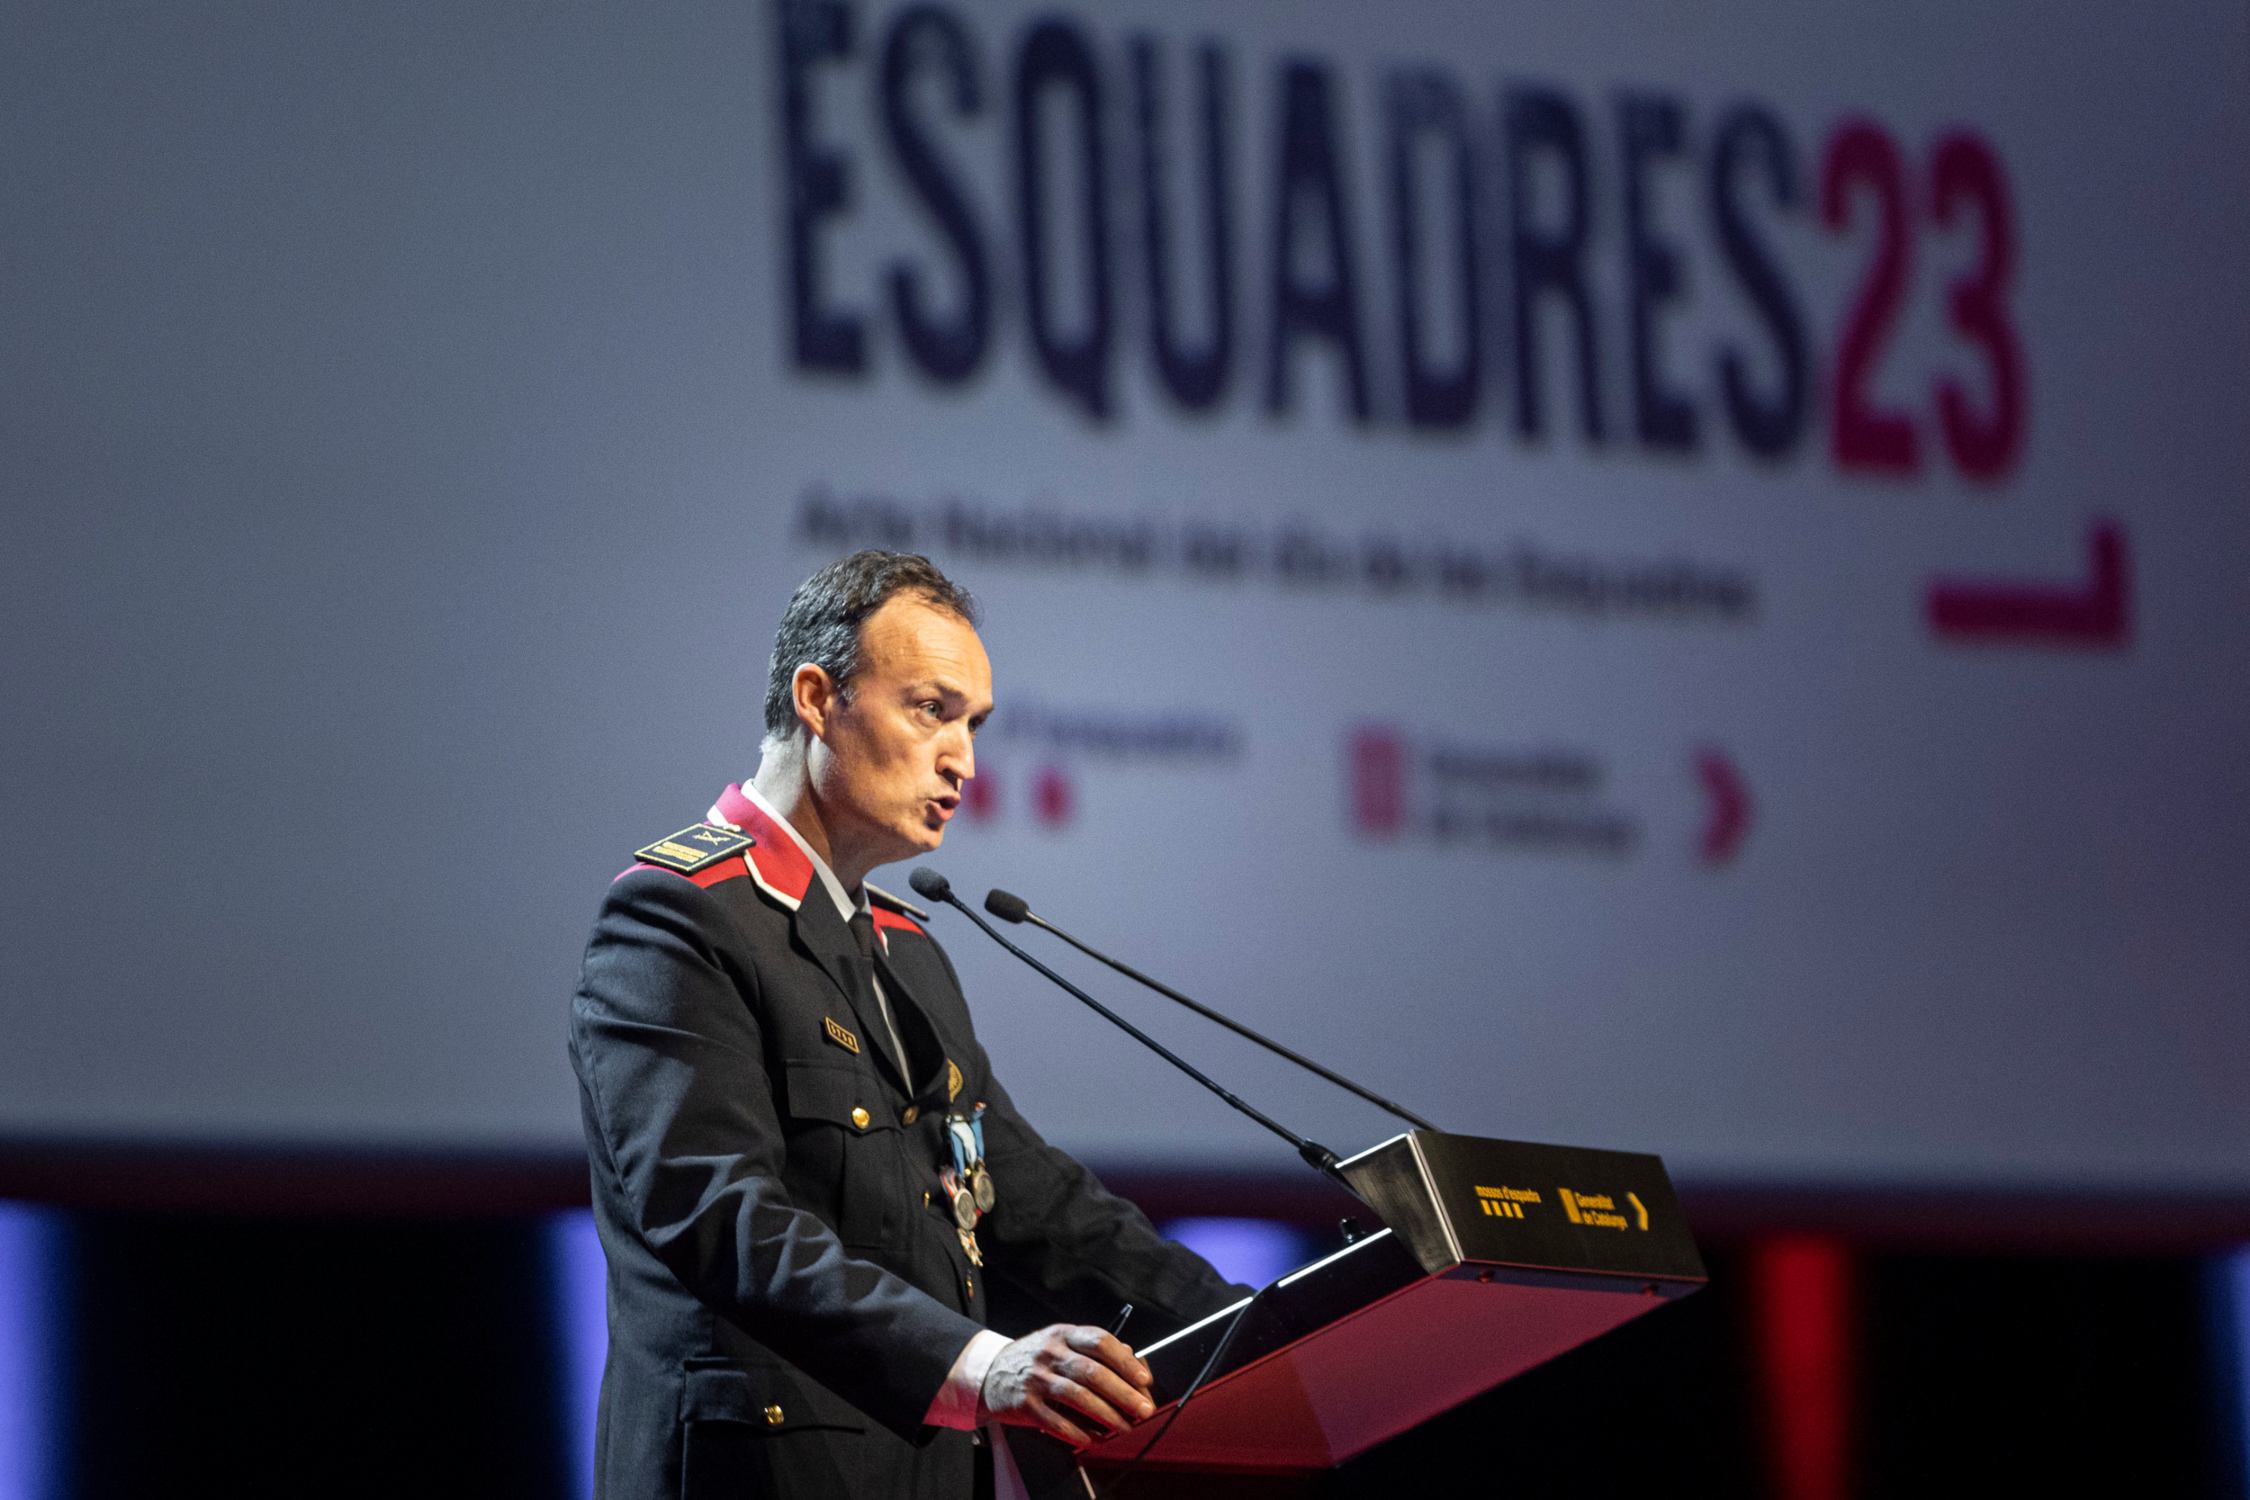 El jefe de los Mossos recupera la normalidad de las Esquadres con un discurso técnico y policial